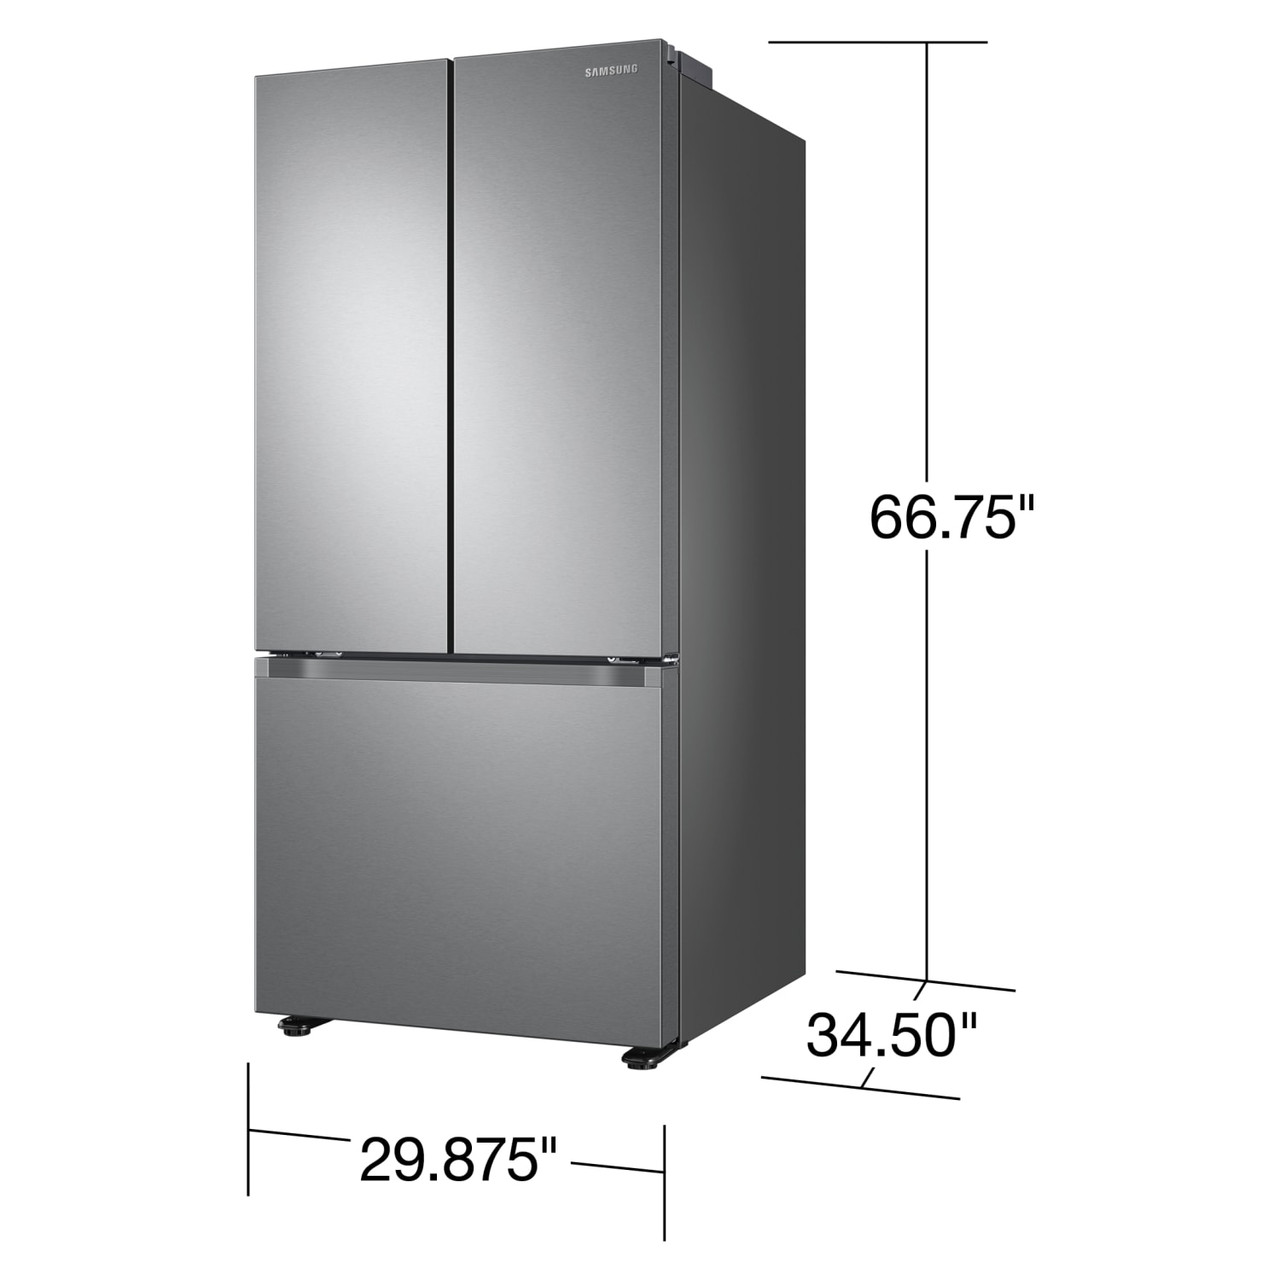 Samsung 22 cu. ft. Smart 3-Door French Door Refrigerator - Stainless Steel